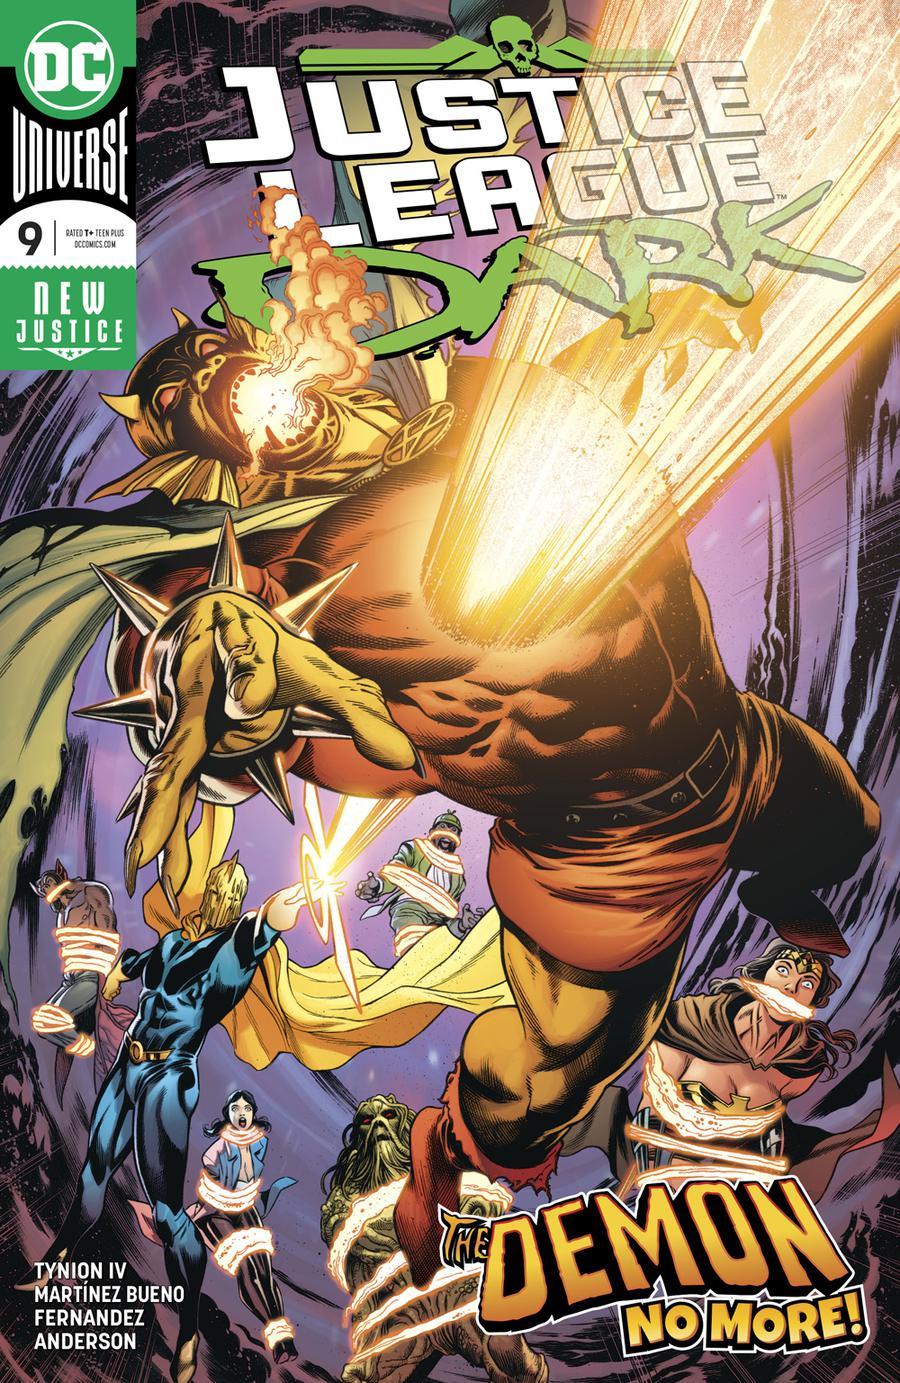 Justice League Dark Vol. 2 #9